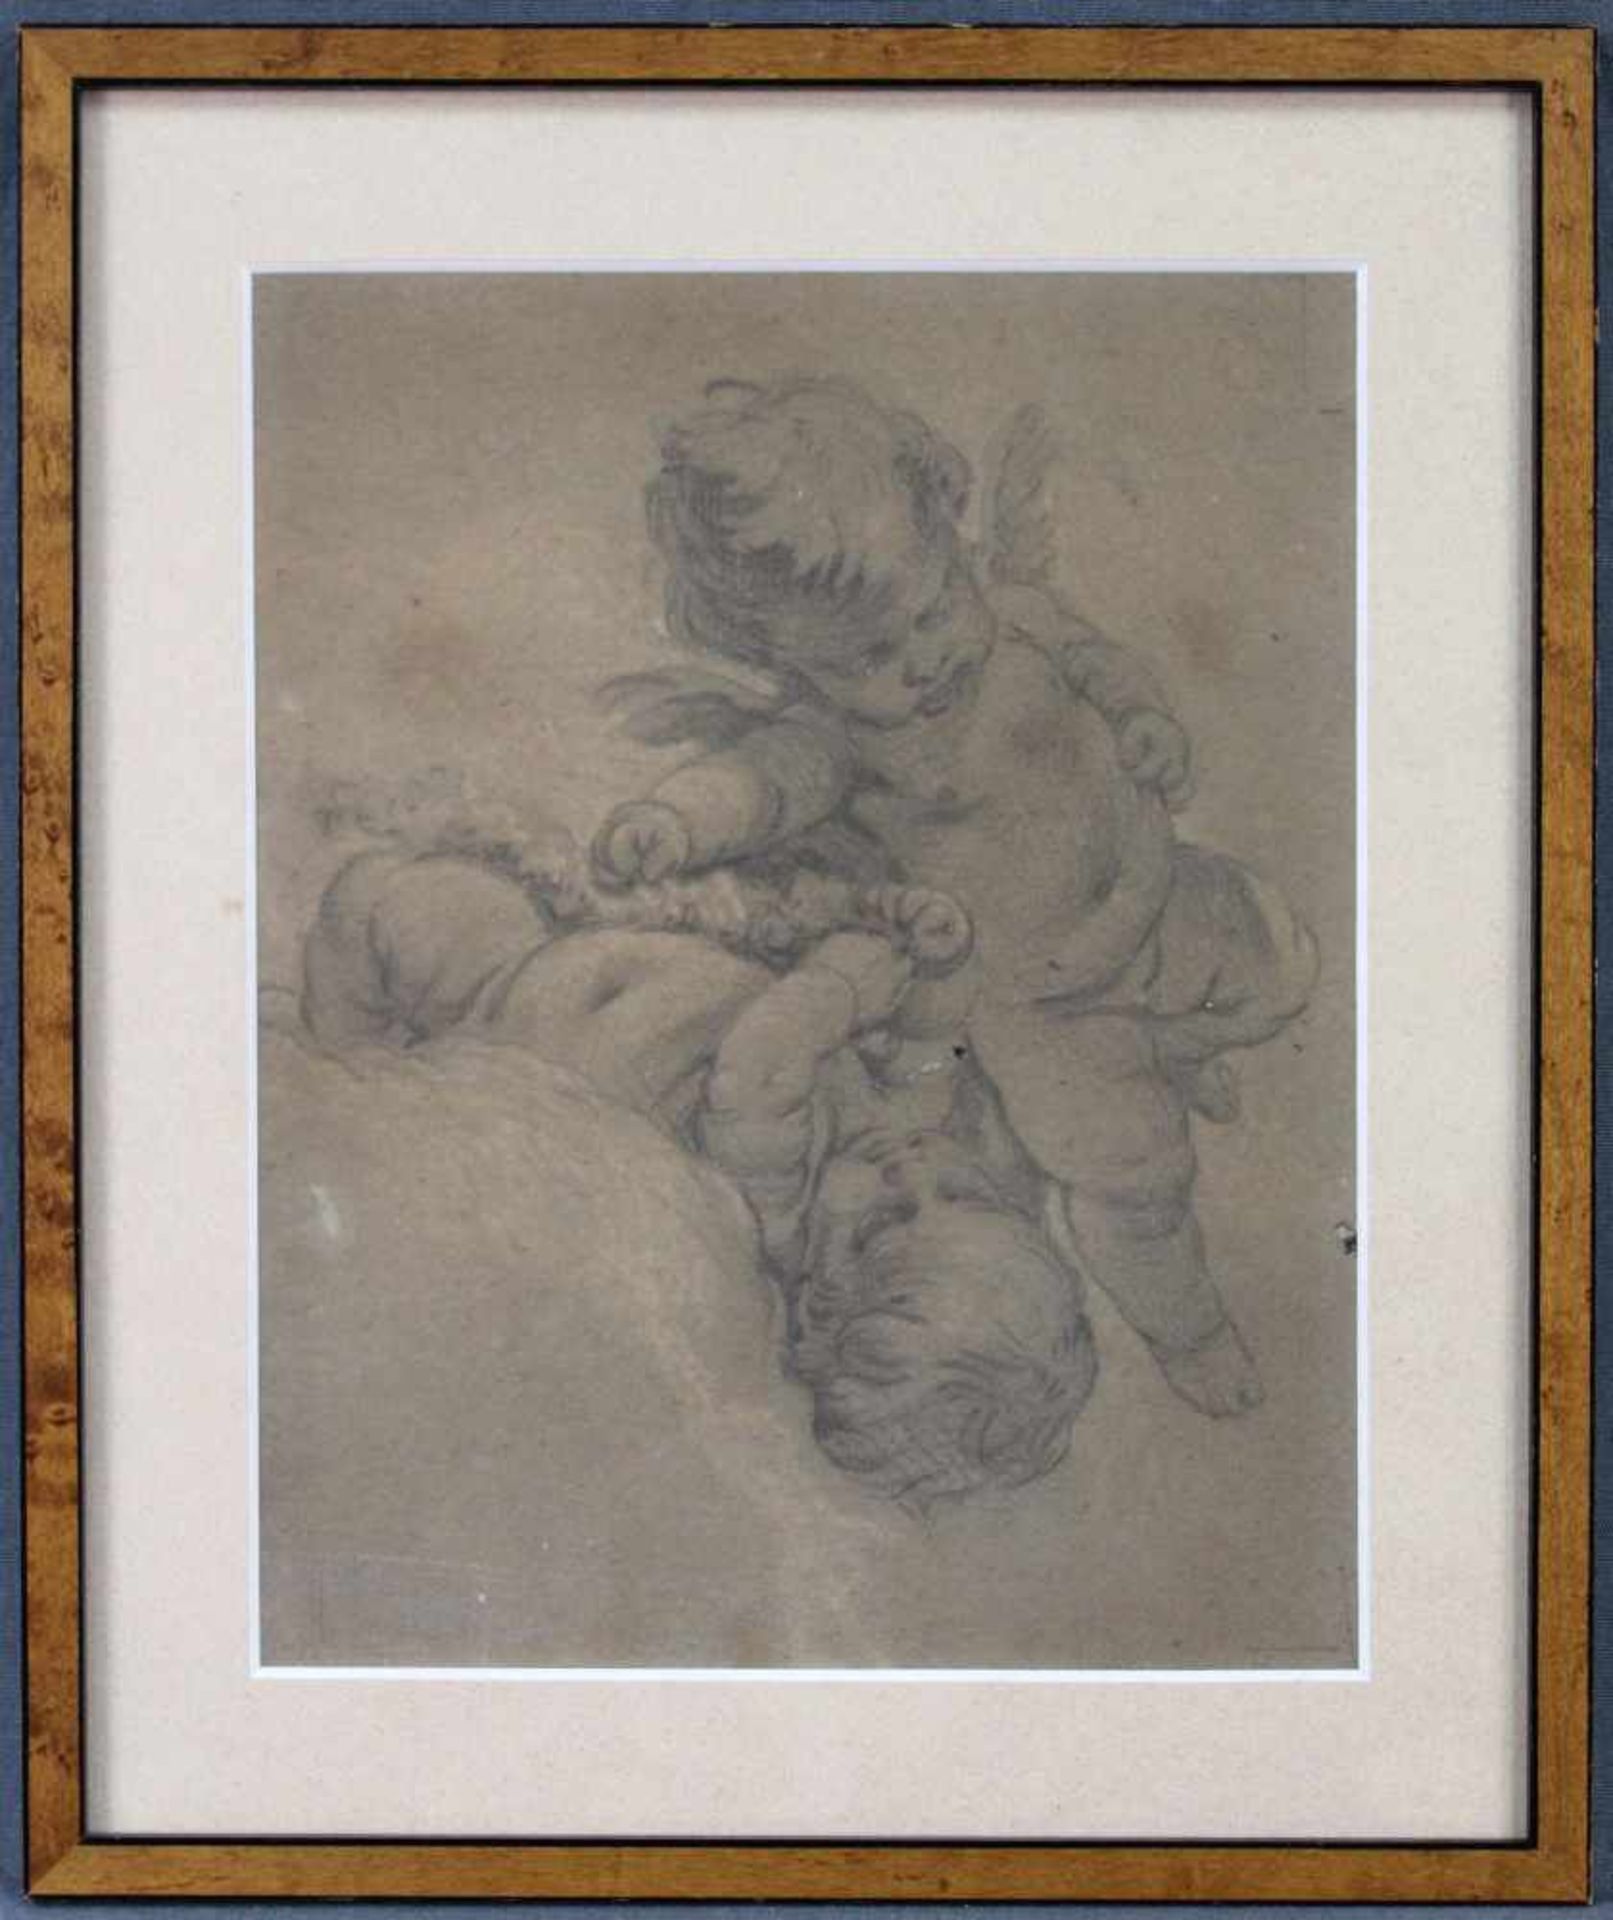 BAROCKMALER (XVIII). Kohlezeichnung mit 2 Putti.22 cm x 17 cm. Provenienz: Galerie Paul Sties. - Image 2 of 5